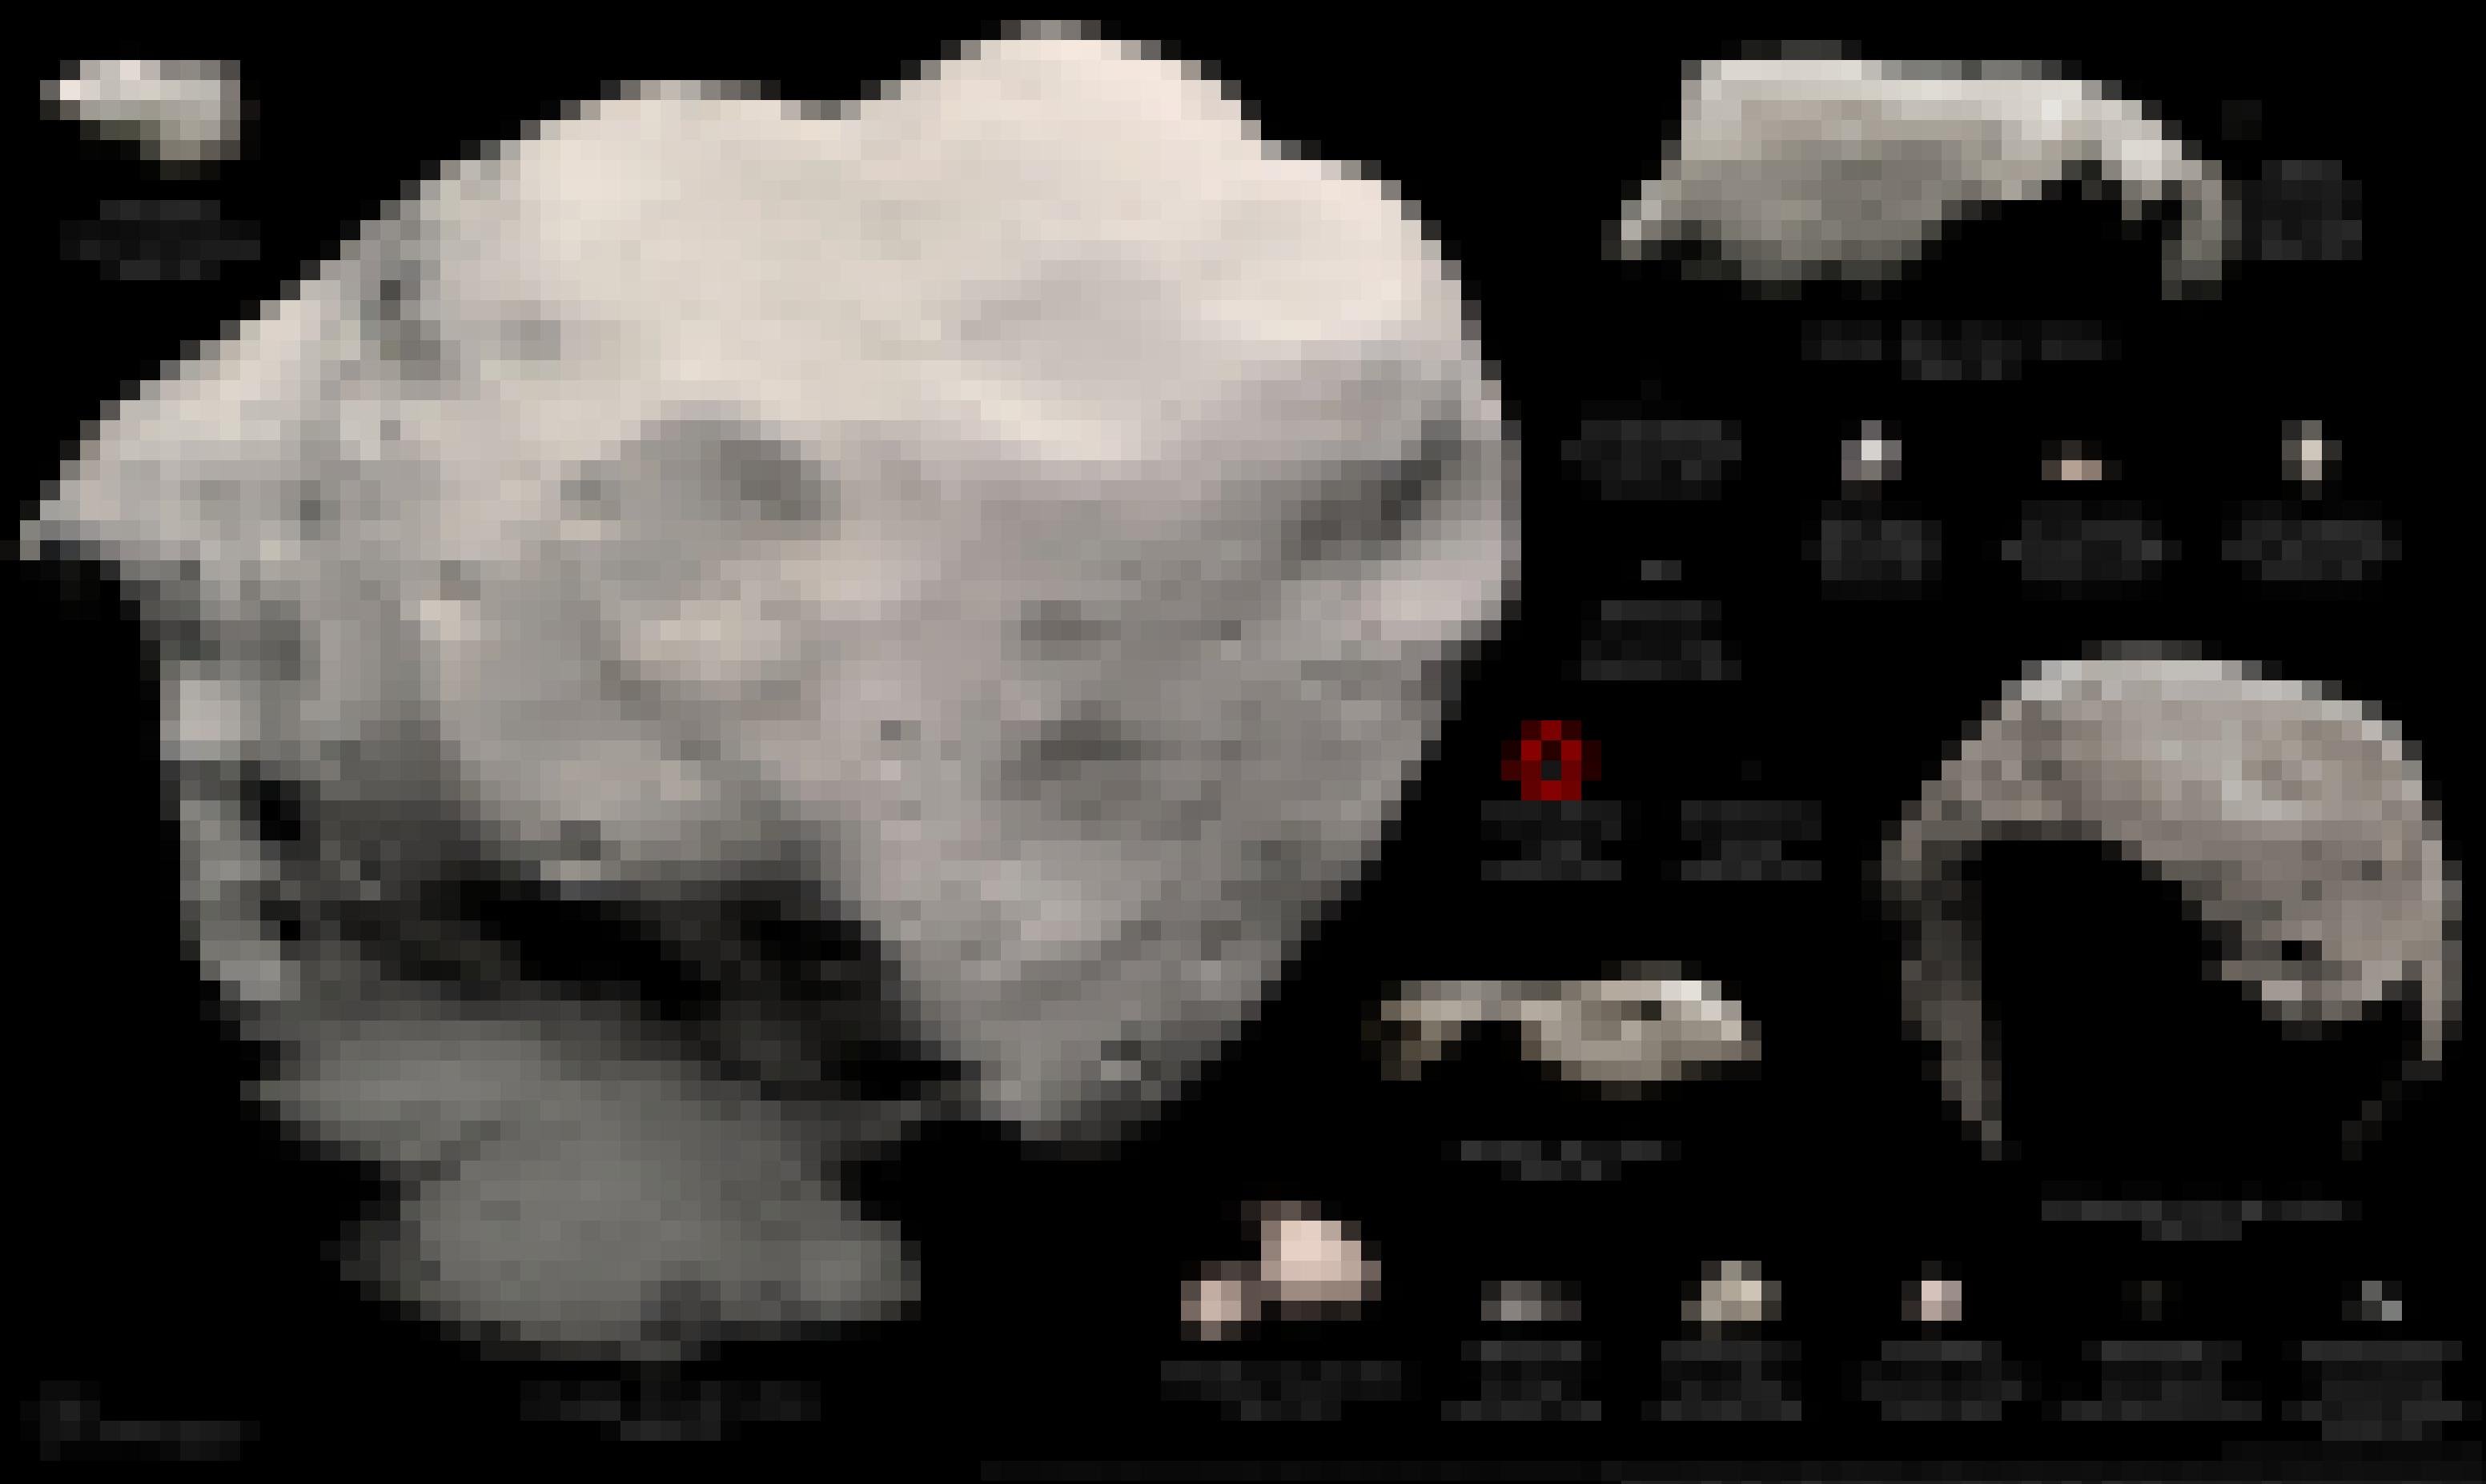 Montage aller jemals von Raumsonden besuchten Asteroiden und Kometenkerne